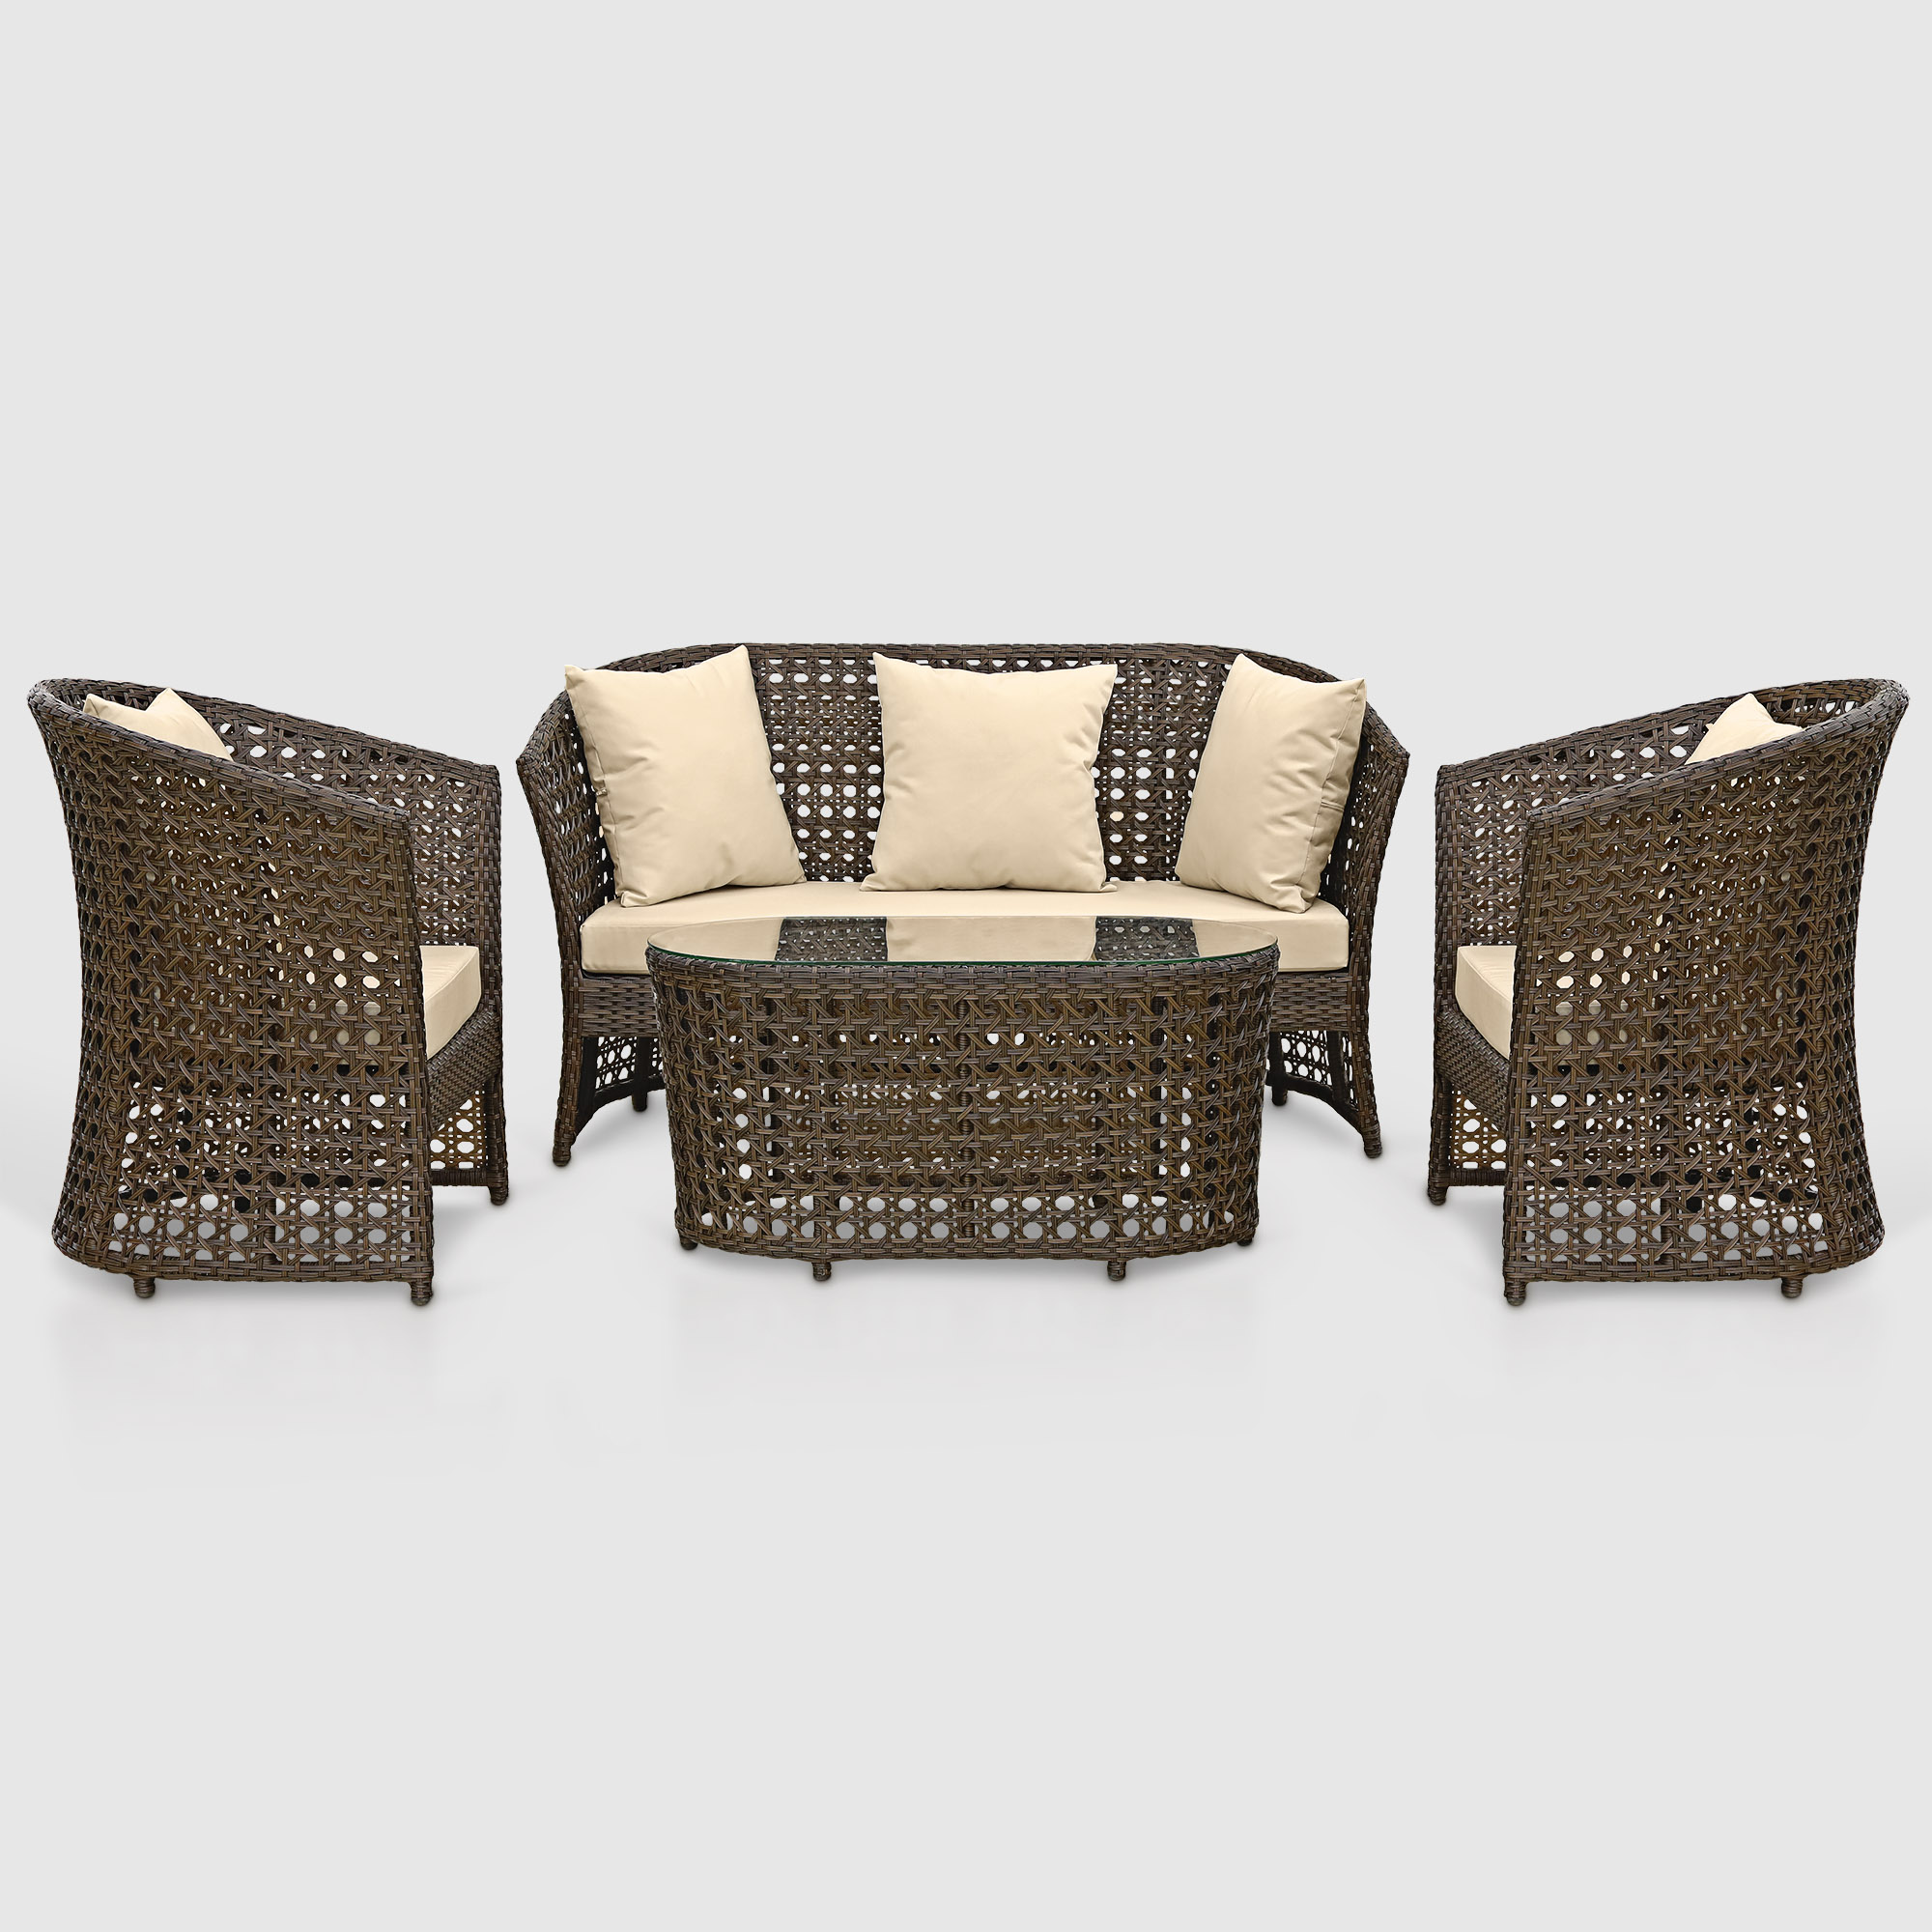 Комплект мебели Ns Rattan Linda коричневый с бежевым 4 предмета террасный комплект стол со стеклом 2 кресла tetchair pelangi ротанг walnut грецкий орех